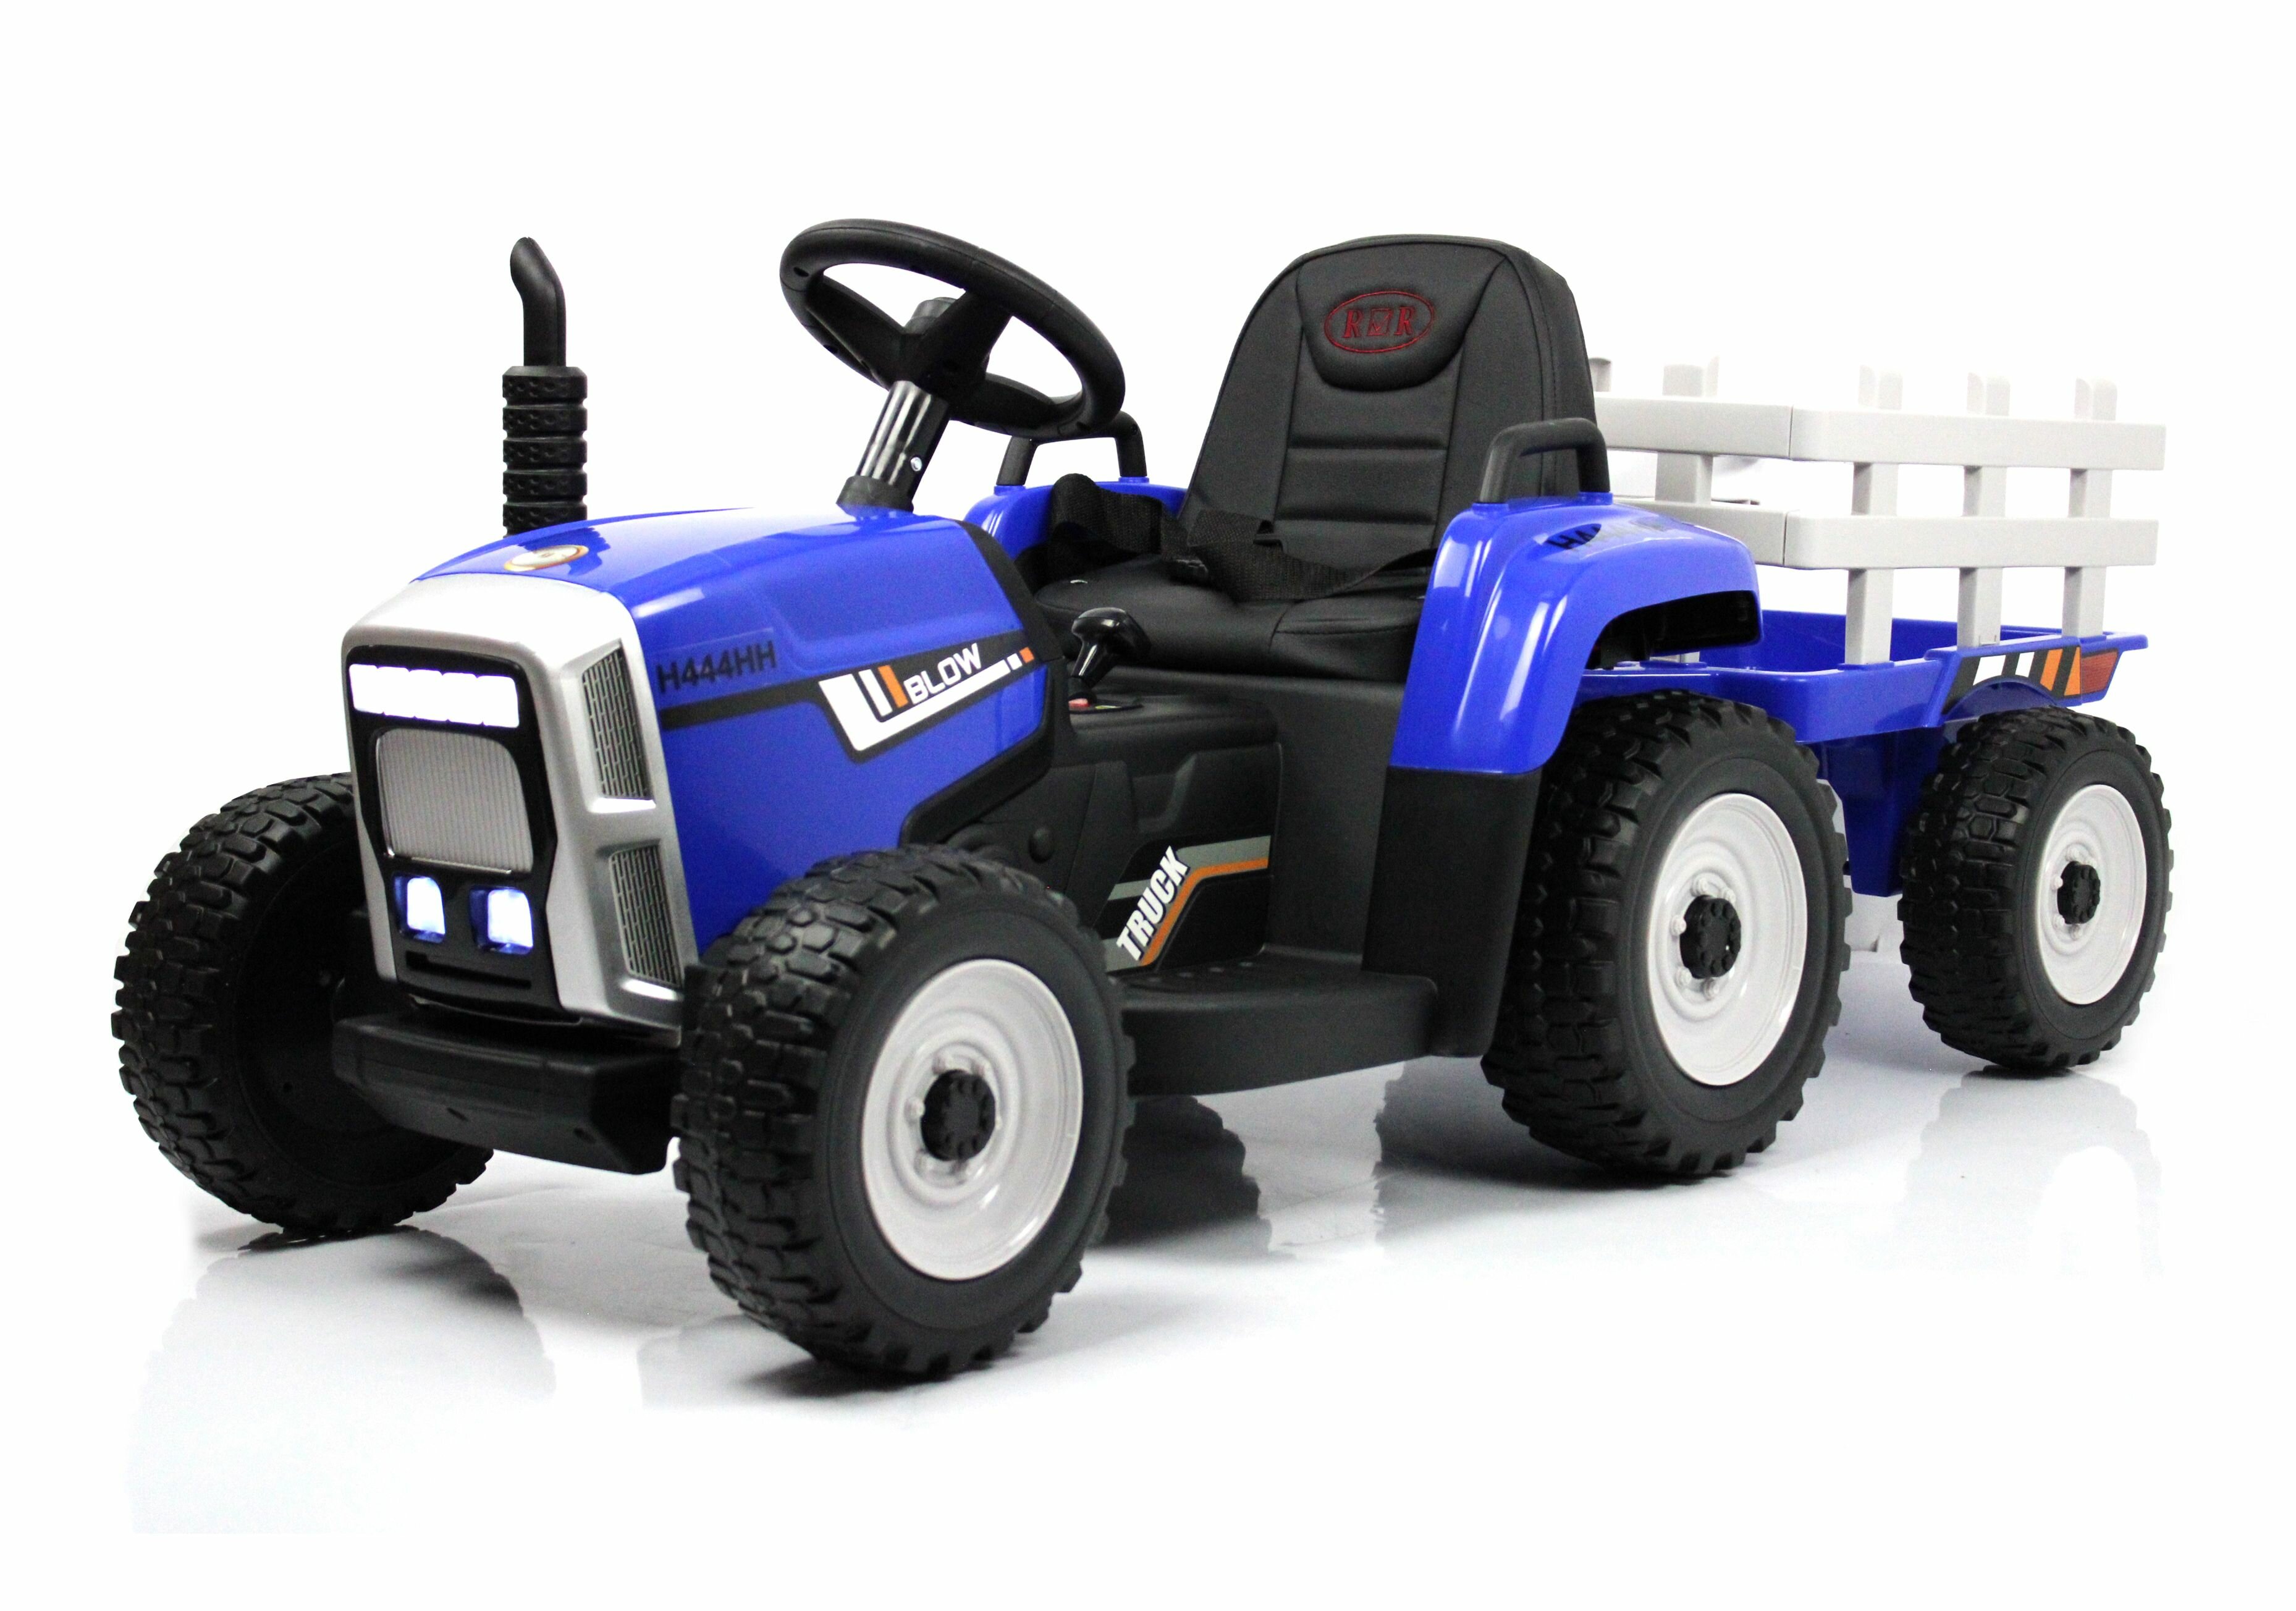 Детский электромобиль-трактор H444HH синий